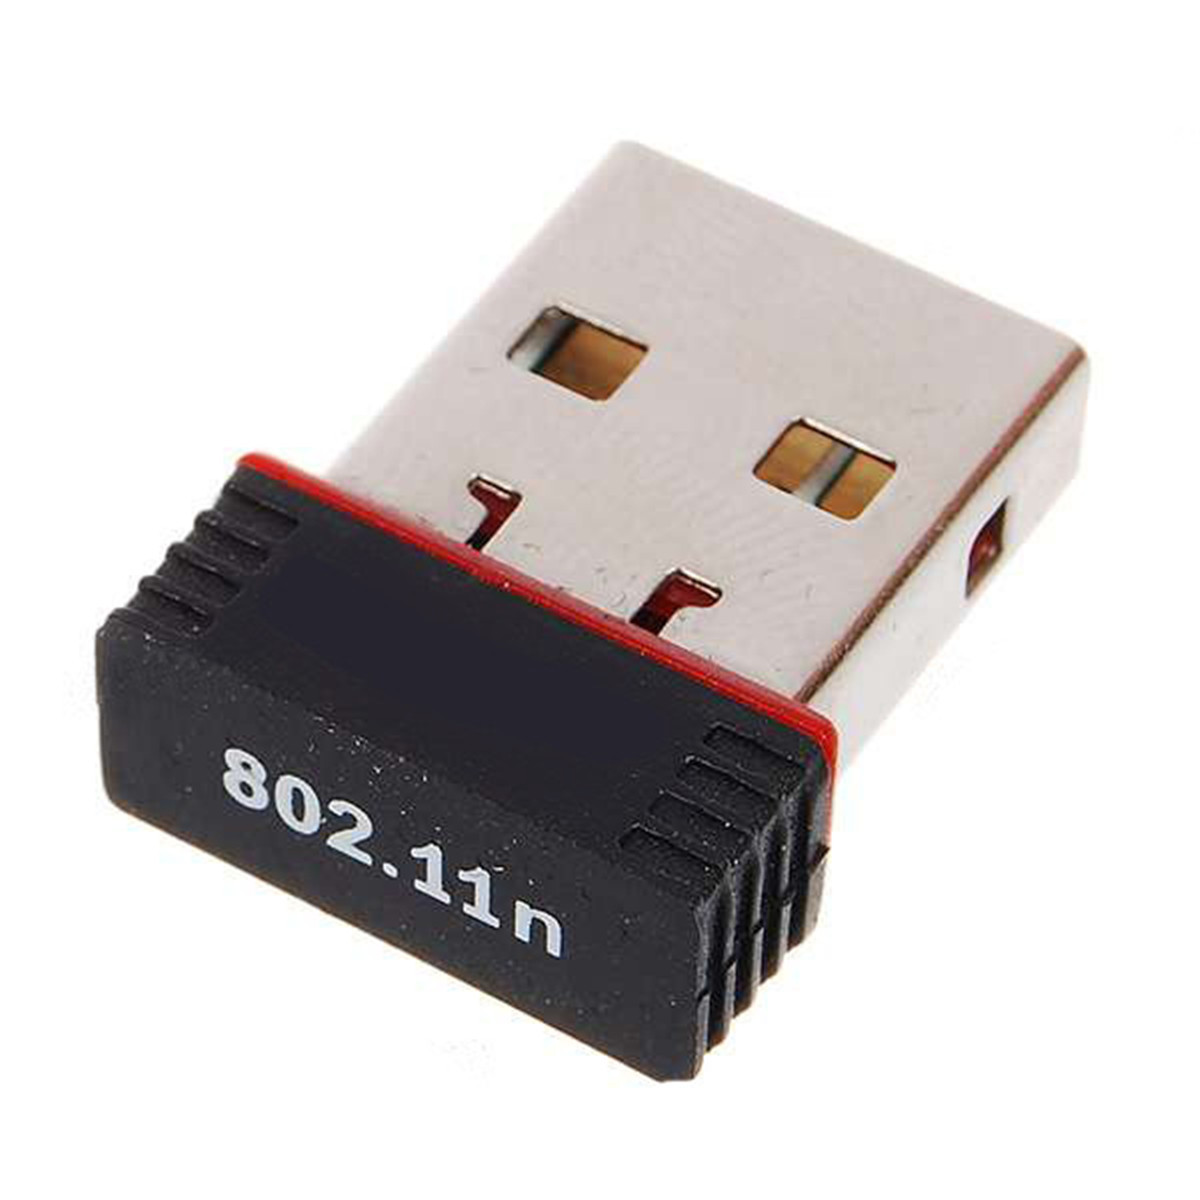 EP-N8508 Mini Wireless Lan NANO Card Dongle Computer Wifi Adapter